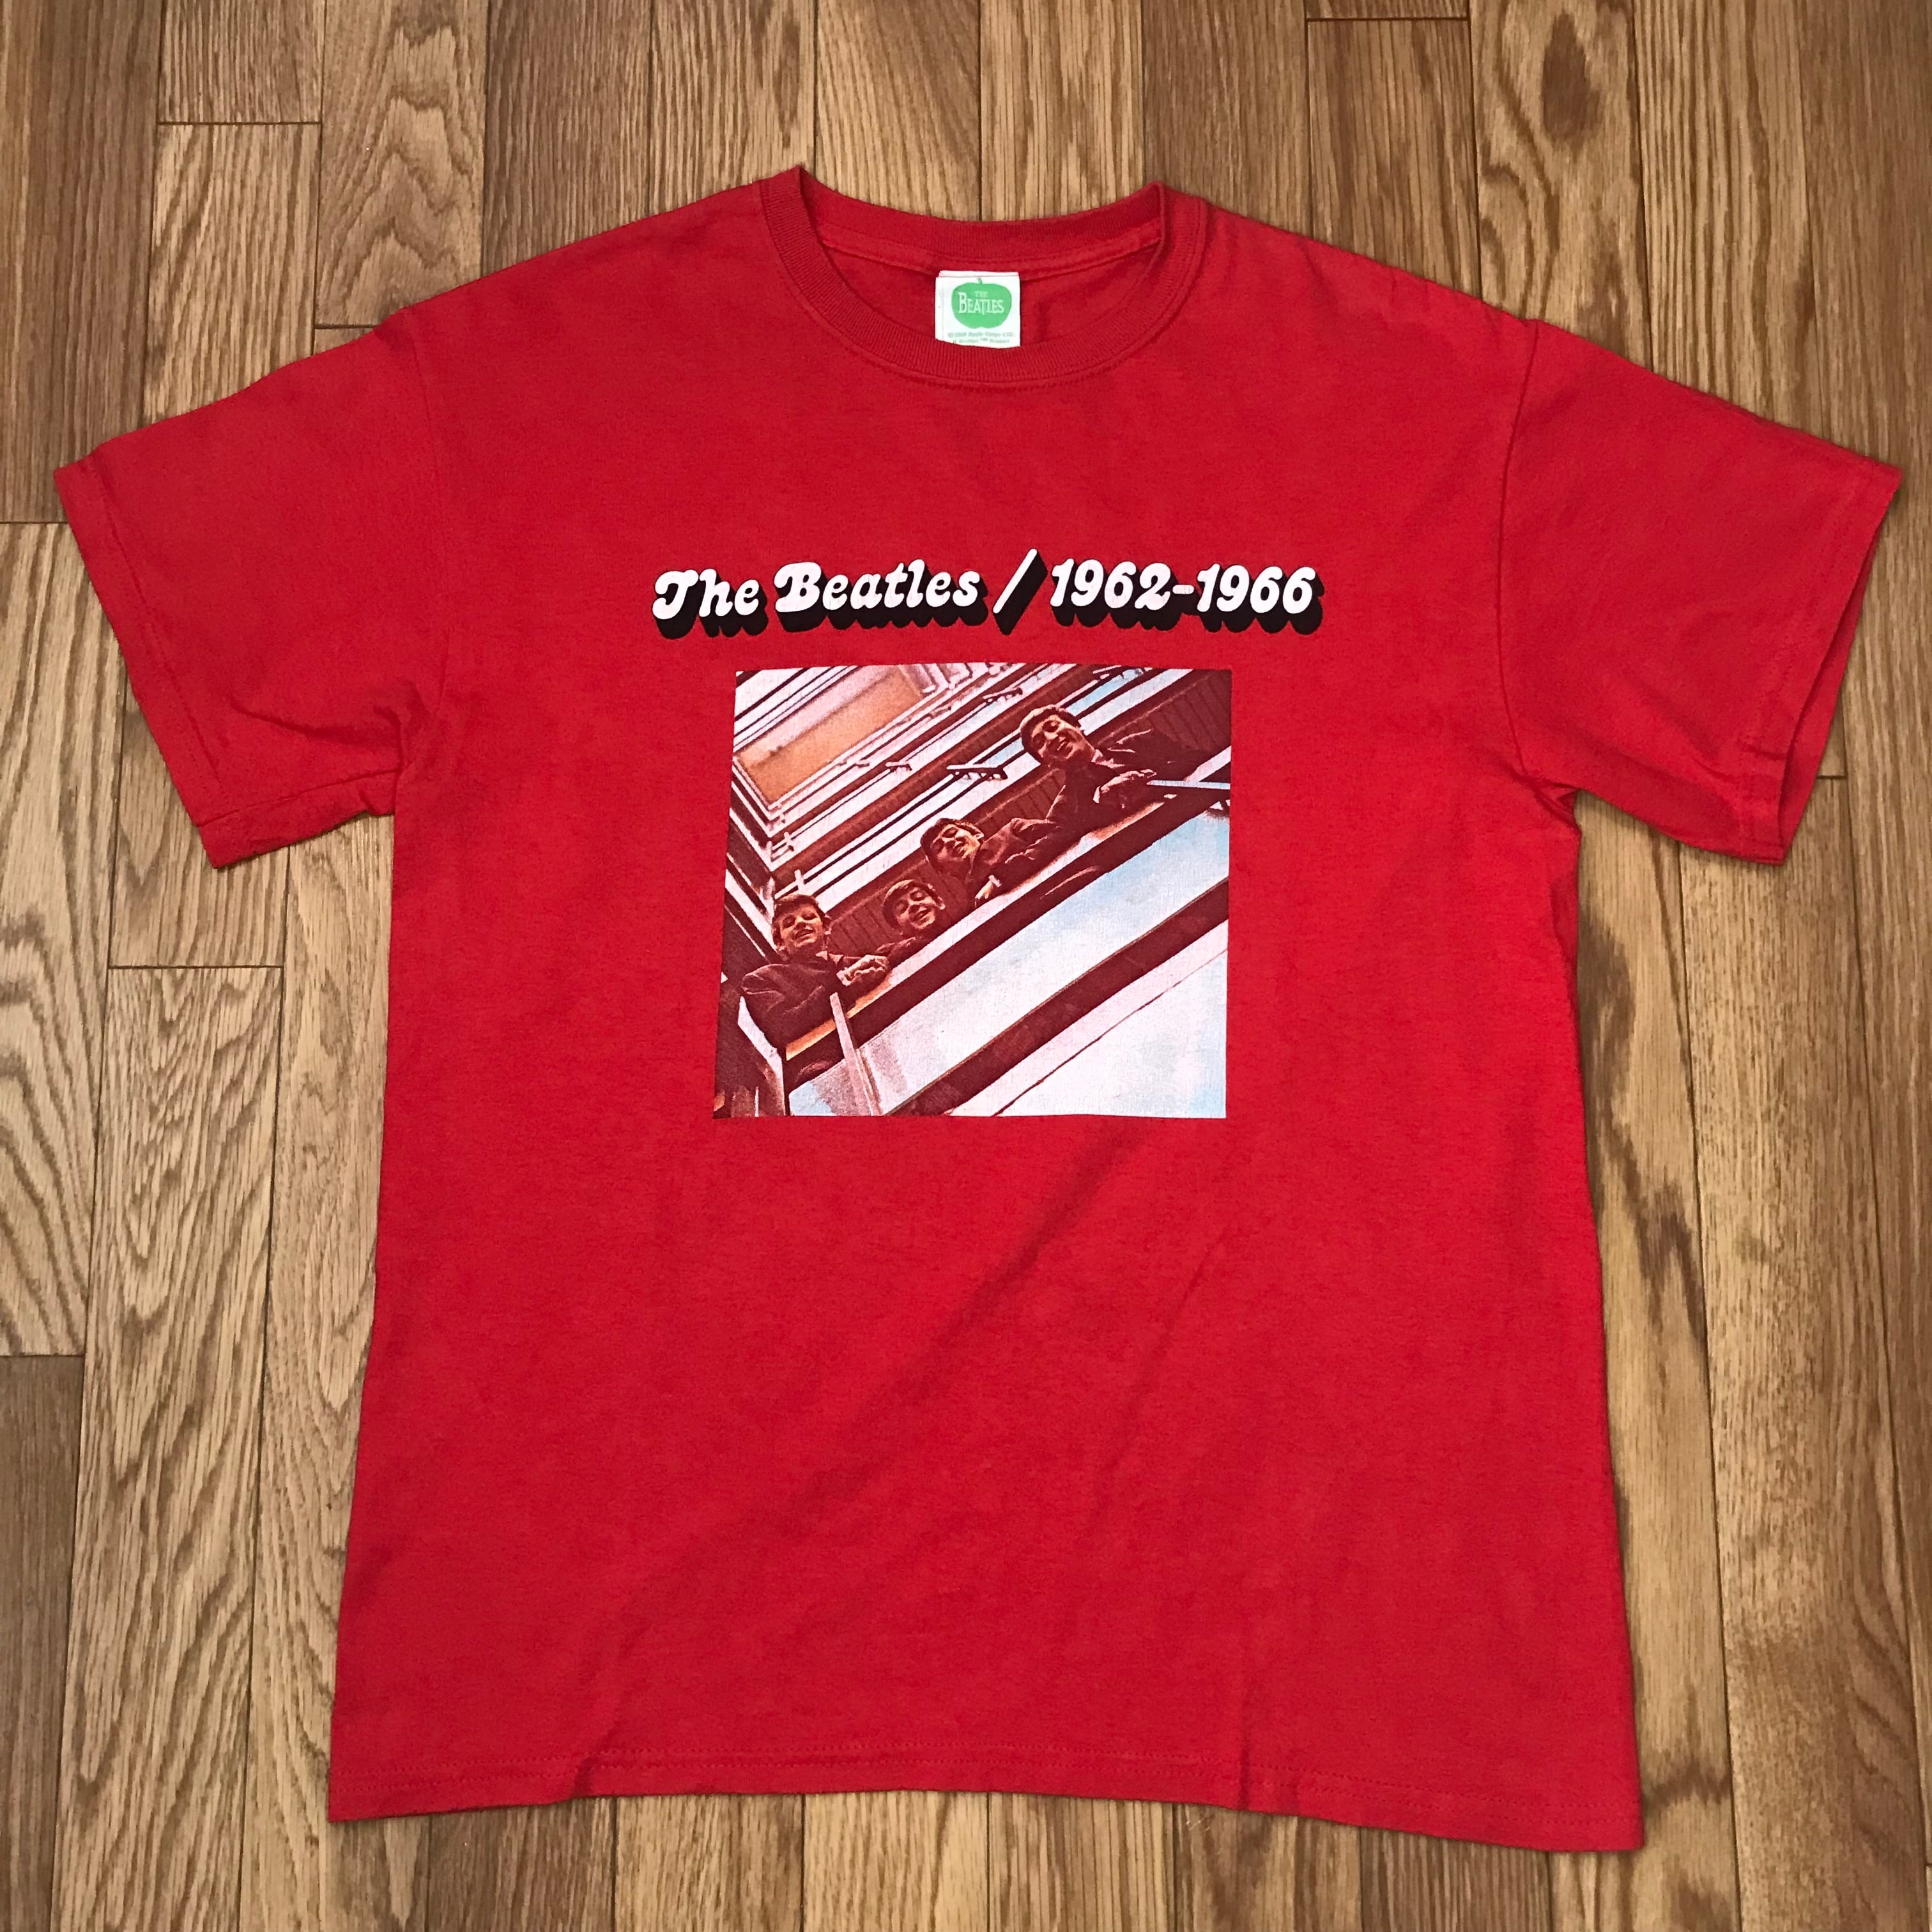 ビートルズ TheBeatles バンドTシャツ 2002年製 赤 赤盤モチーフ